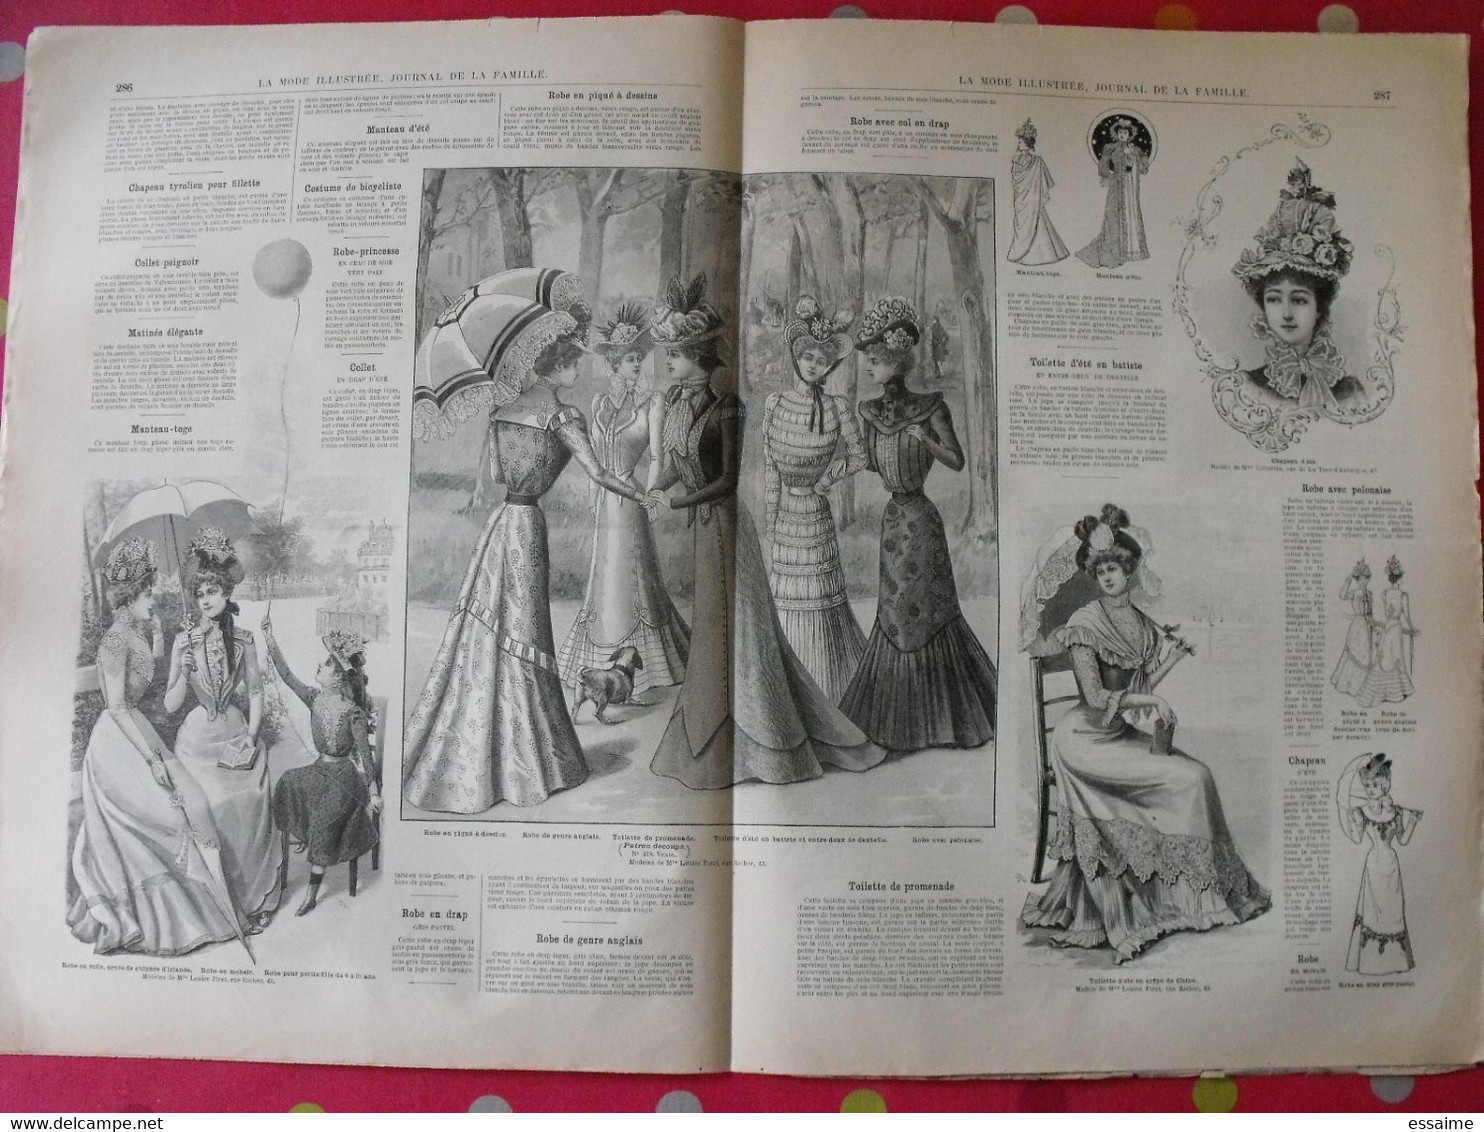 4 revues la mode illustrée, journal de la famille.  n° 24,25,27,28 de 1899. couverture en couleur. jolies gravures